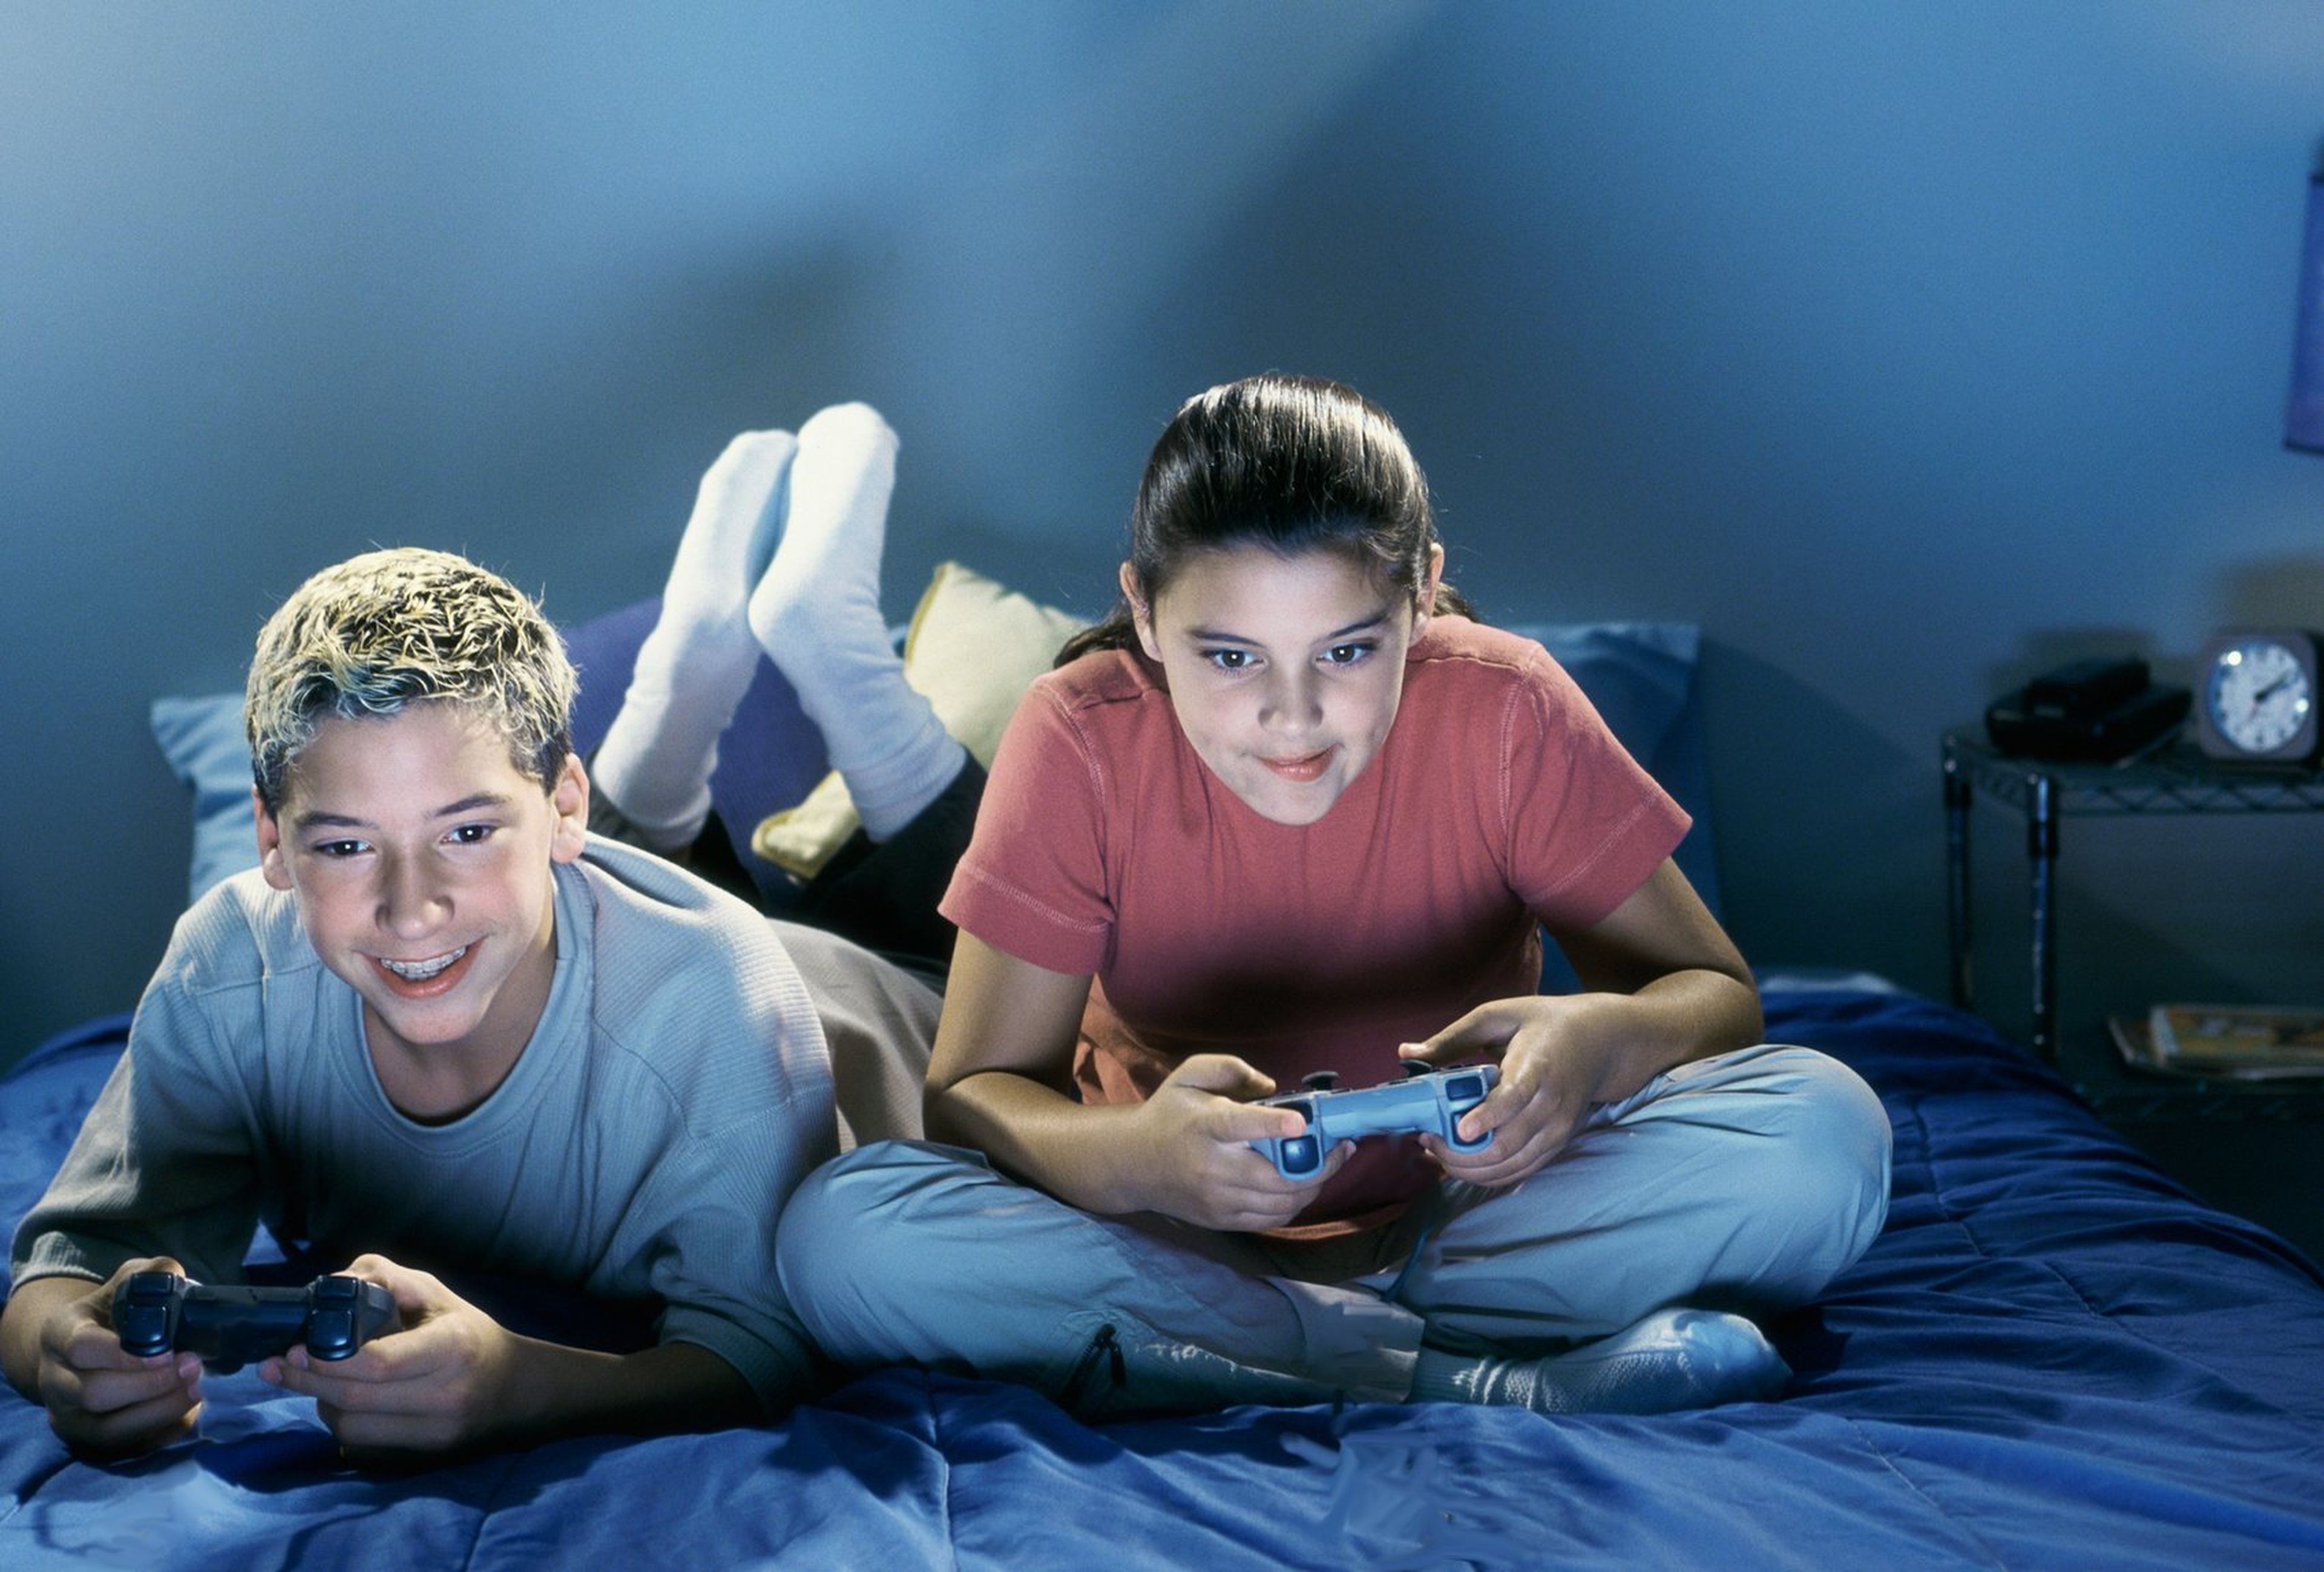 They like to play games. Подросток геймер. Игровая зависимость у подростков. Видеоигры для детей. Игровая зависимость картинки.